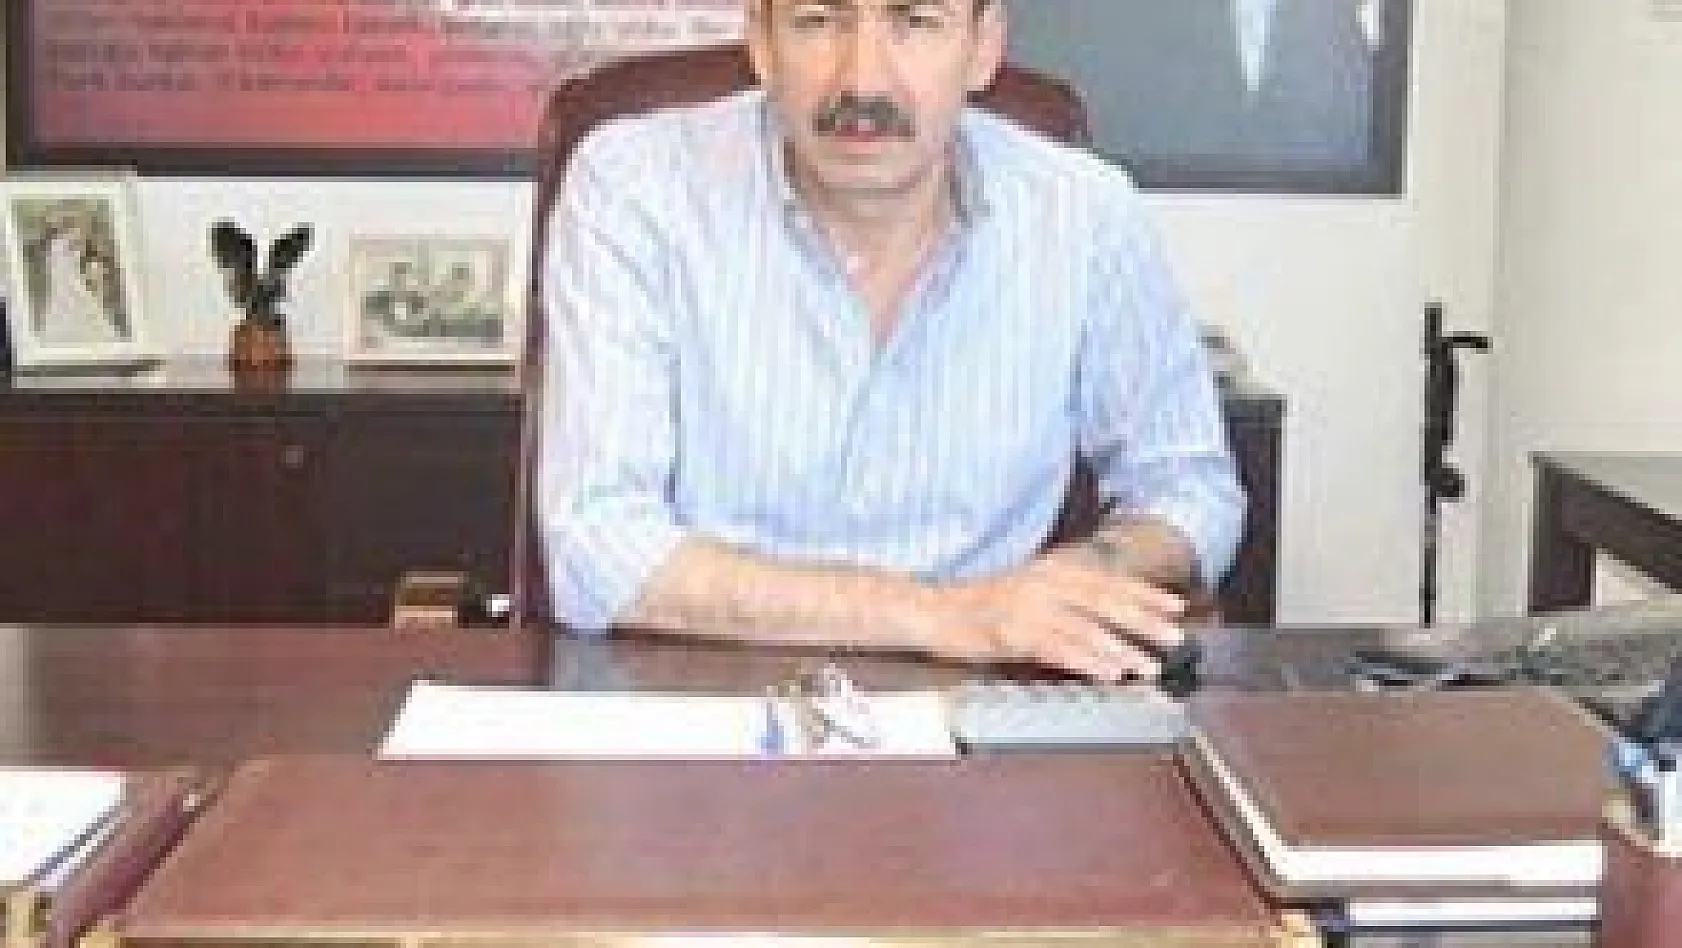 Kayseri Sarraflar ve Kuyumcular Derneği Başkanı Ömer Gülsoy:
